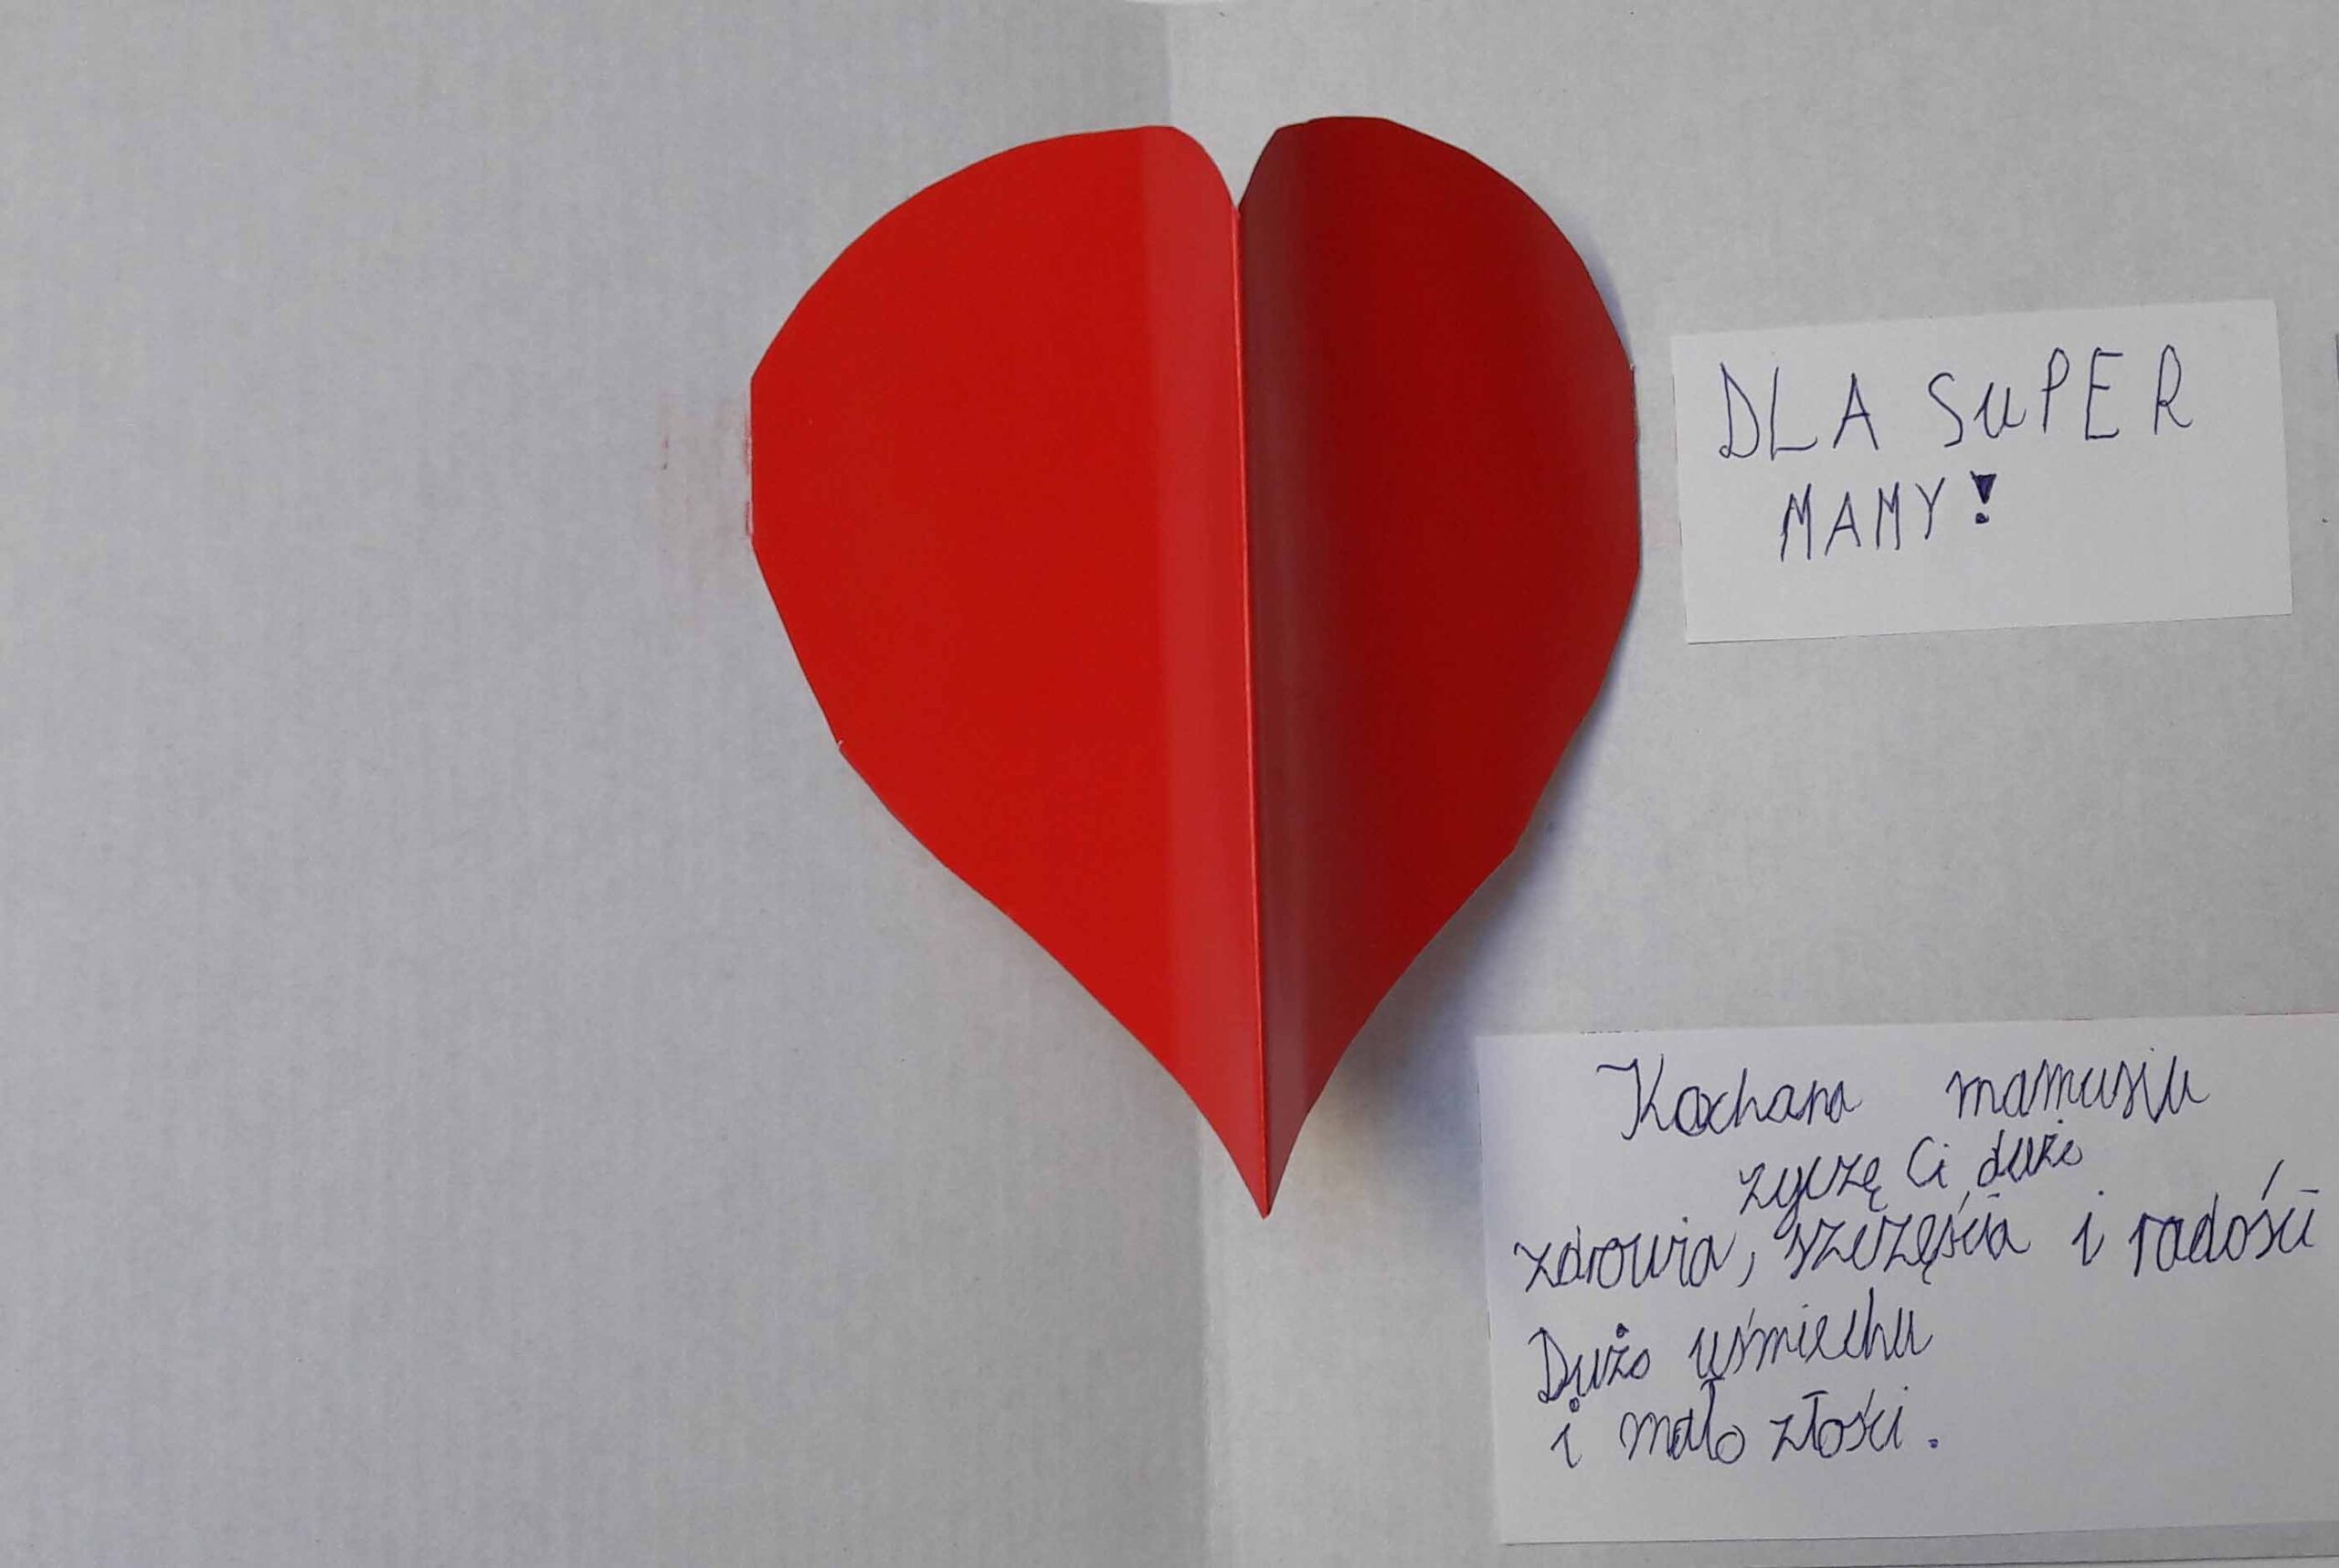 czerwone serce w środku białej kartki papieru z życzeniami na dzień mamy